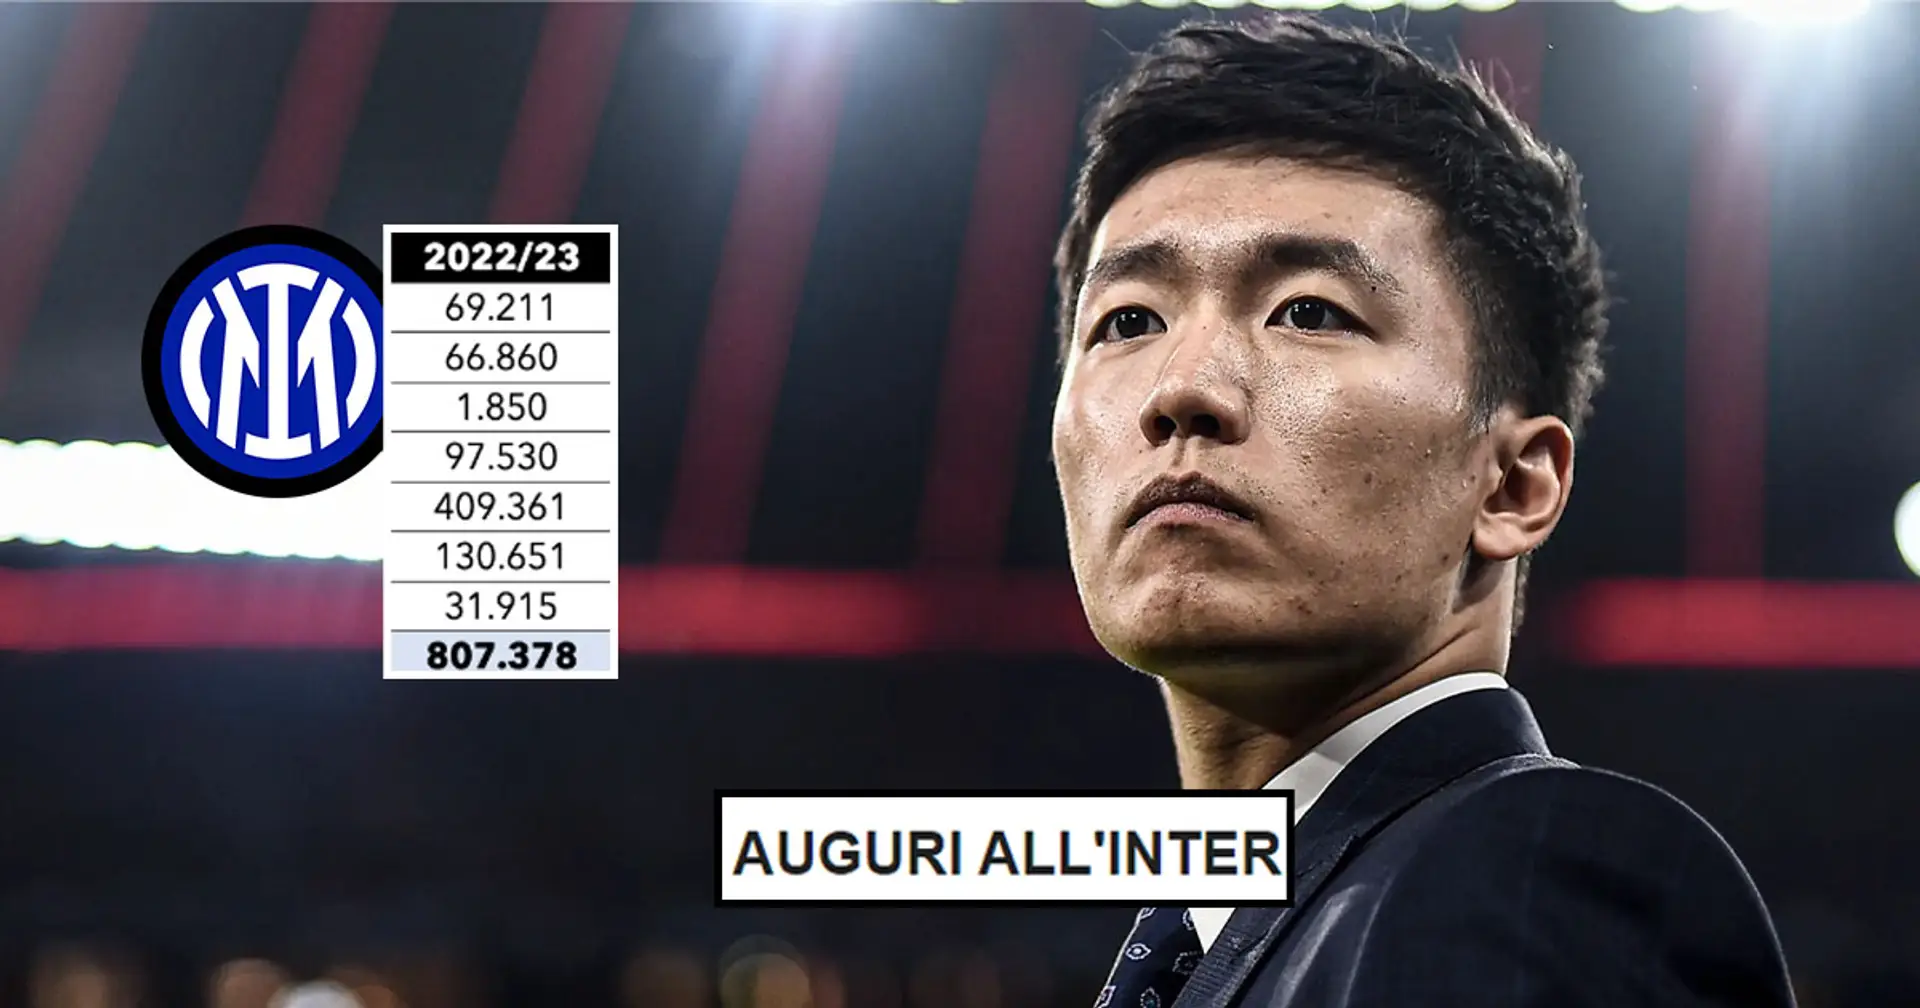 "Auguri all'Inter": un noto giornalista impallidisce davanti alle cifre con cui Steven Zhang si terrà l'Inter